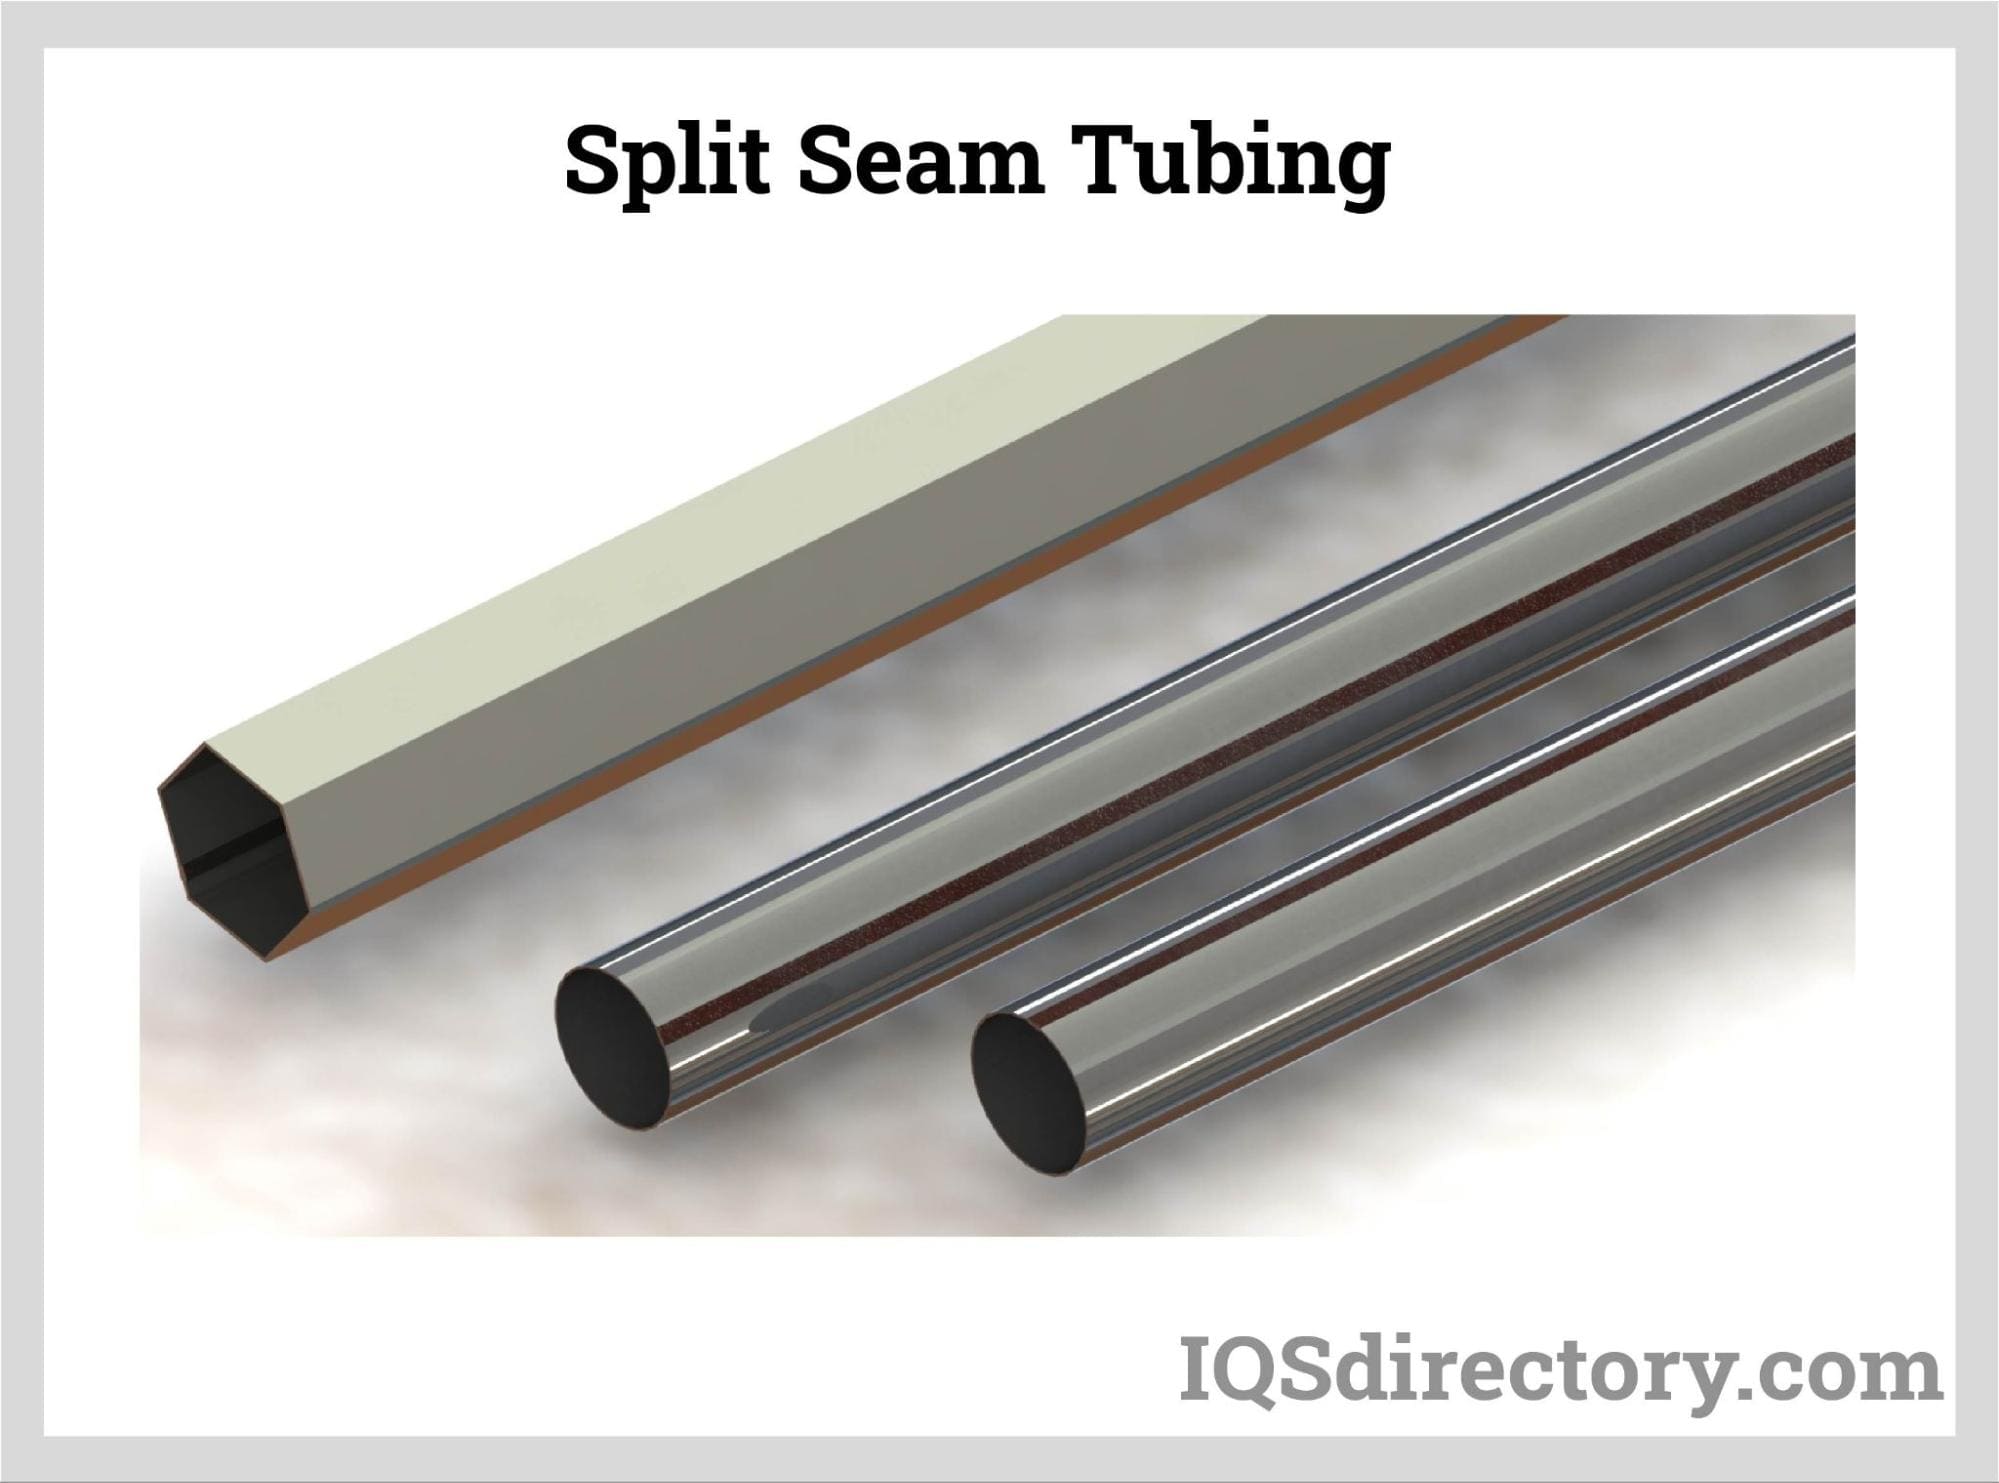 Split Seam Tubing